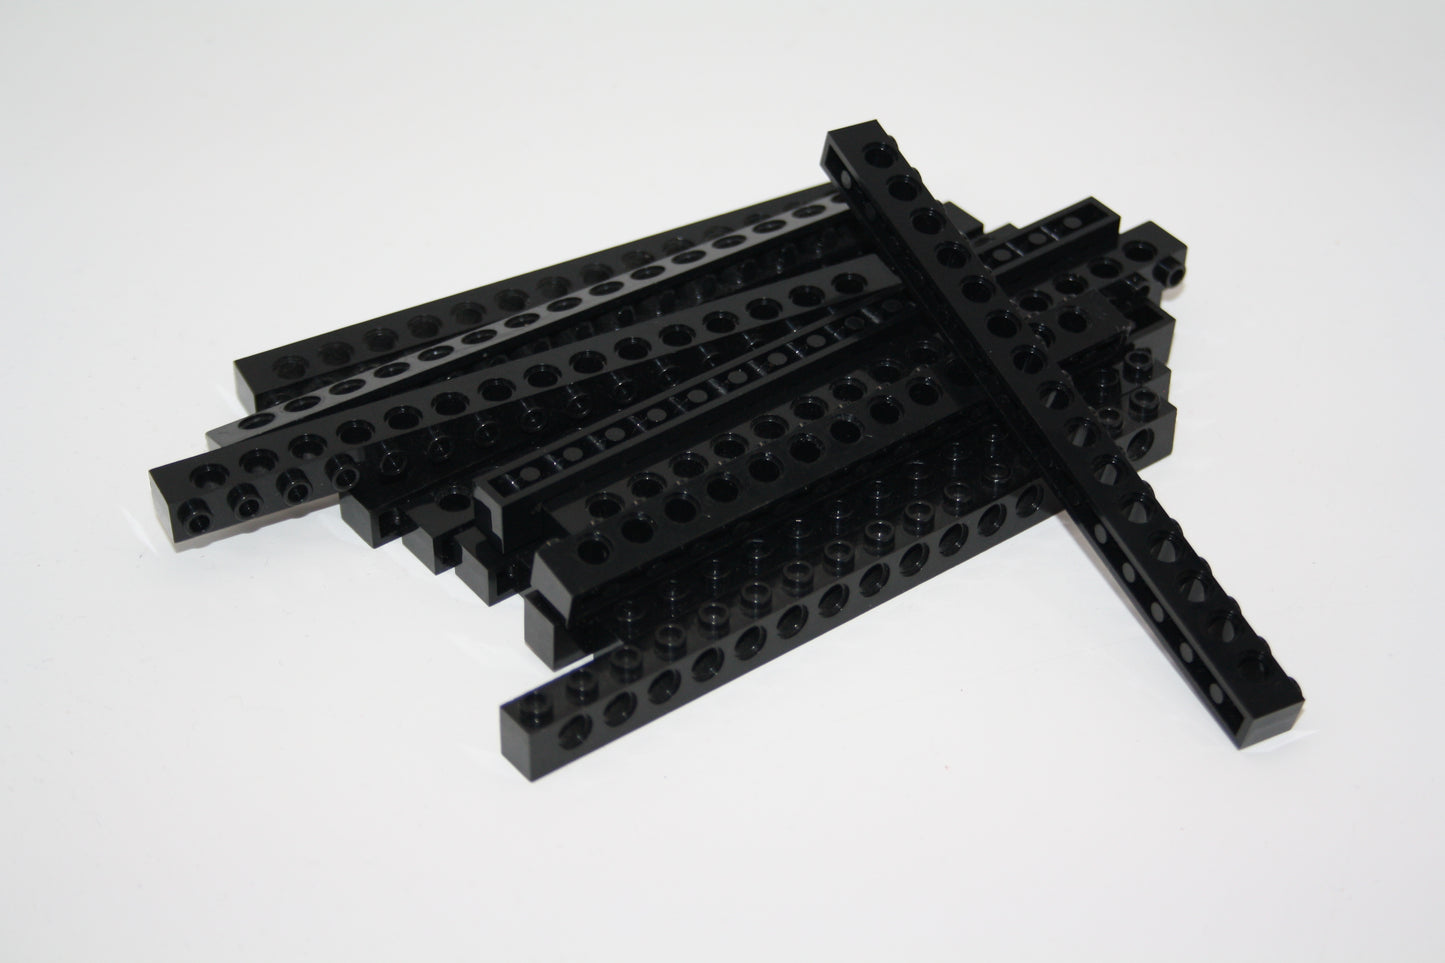 LEGO® Technik - 1x16 Brick/Stein/Lochbalken mit Loch - schwarz - 3703 - 6-13x Sparpaket